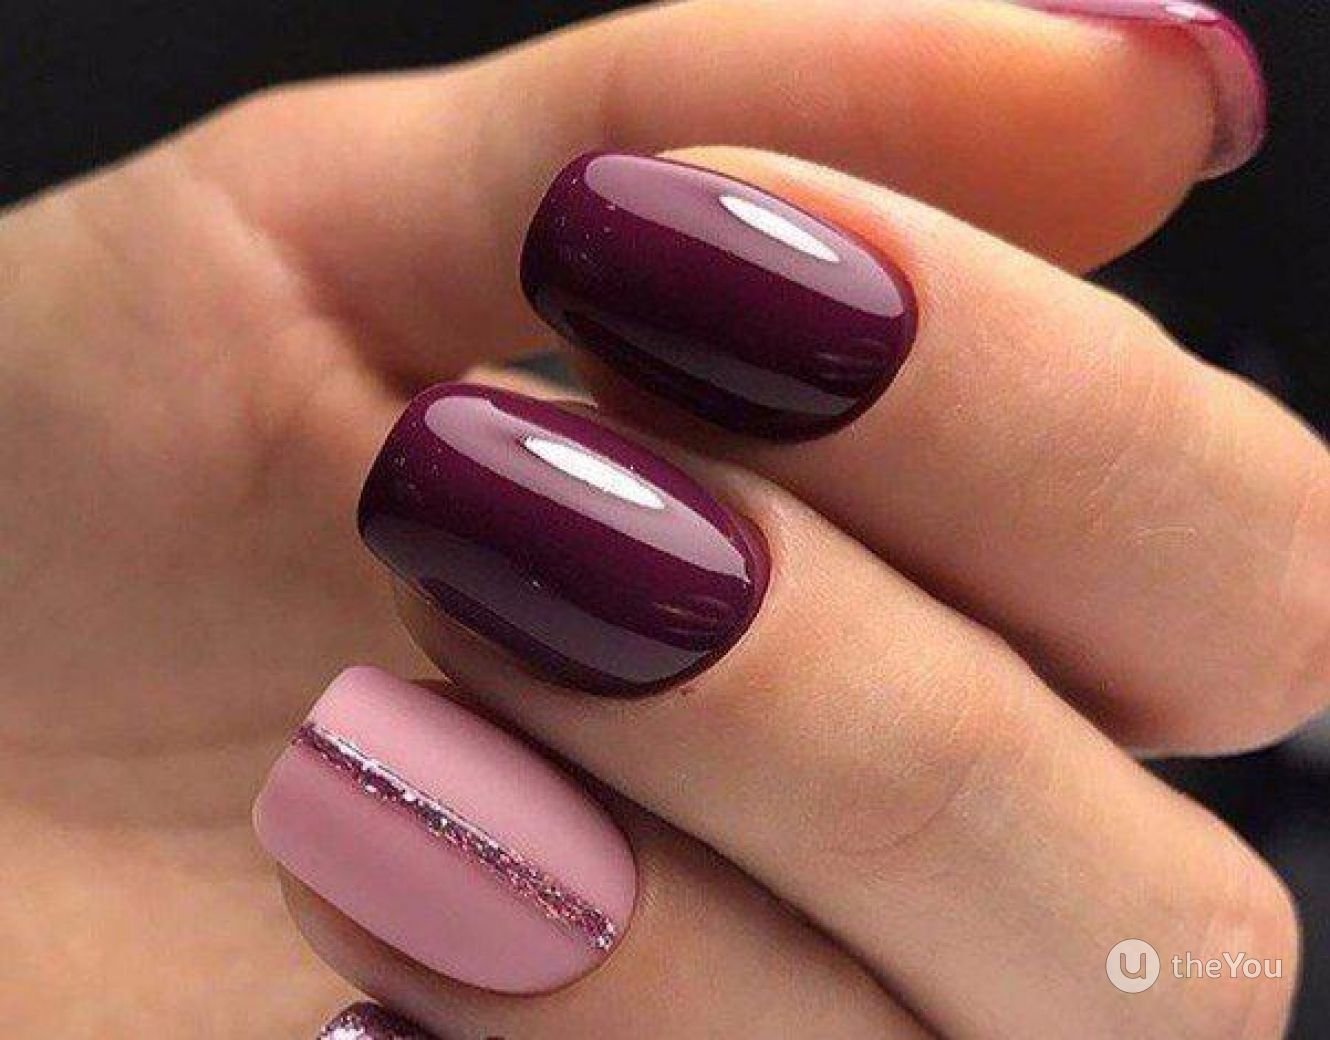 Ногти вишневые с розовым